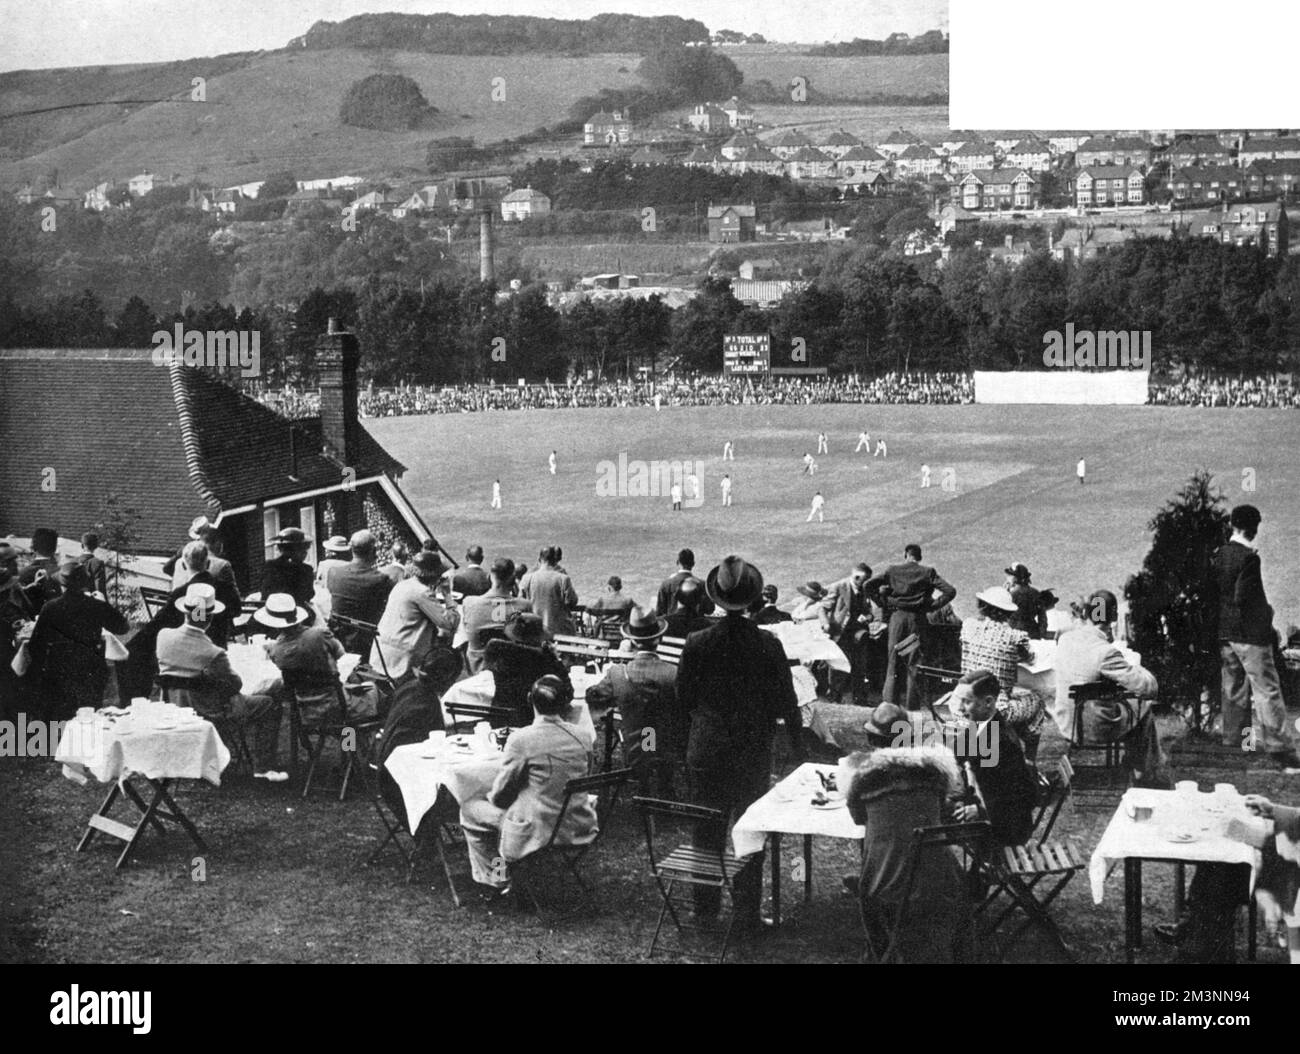 Der schöne Crabble Cricket Ground in Dover, Kent, wurde von 1907 bis 1976 vom Kent County Cricket Club genutzt. Das laufende Spiel findet zwischen Kent und Yorkshire statt, das leicht von den Besuchern gewonnen wurde, die in dieser Saison die County Championship gewannen. Stockfoto